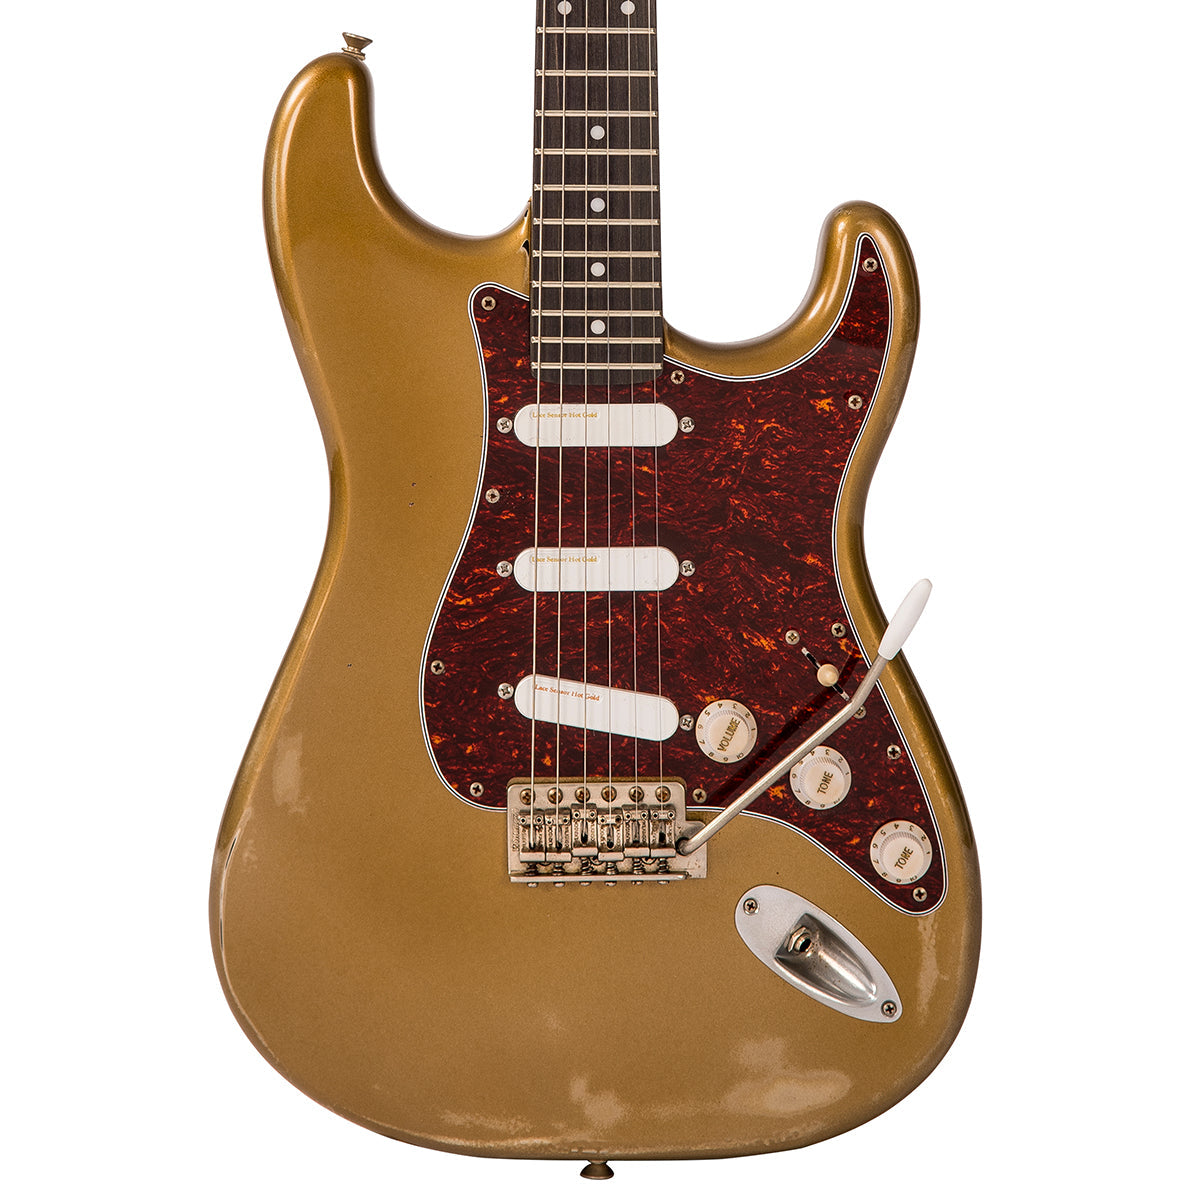 SOLD – Vintage V6 ProShop Unique ~ Gold, Electric Guitars for sale at Richards Guitars.